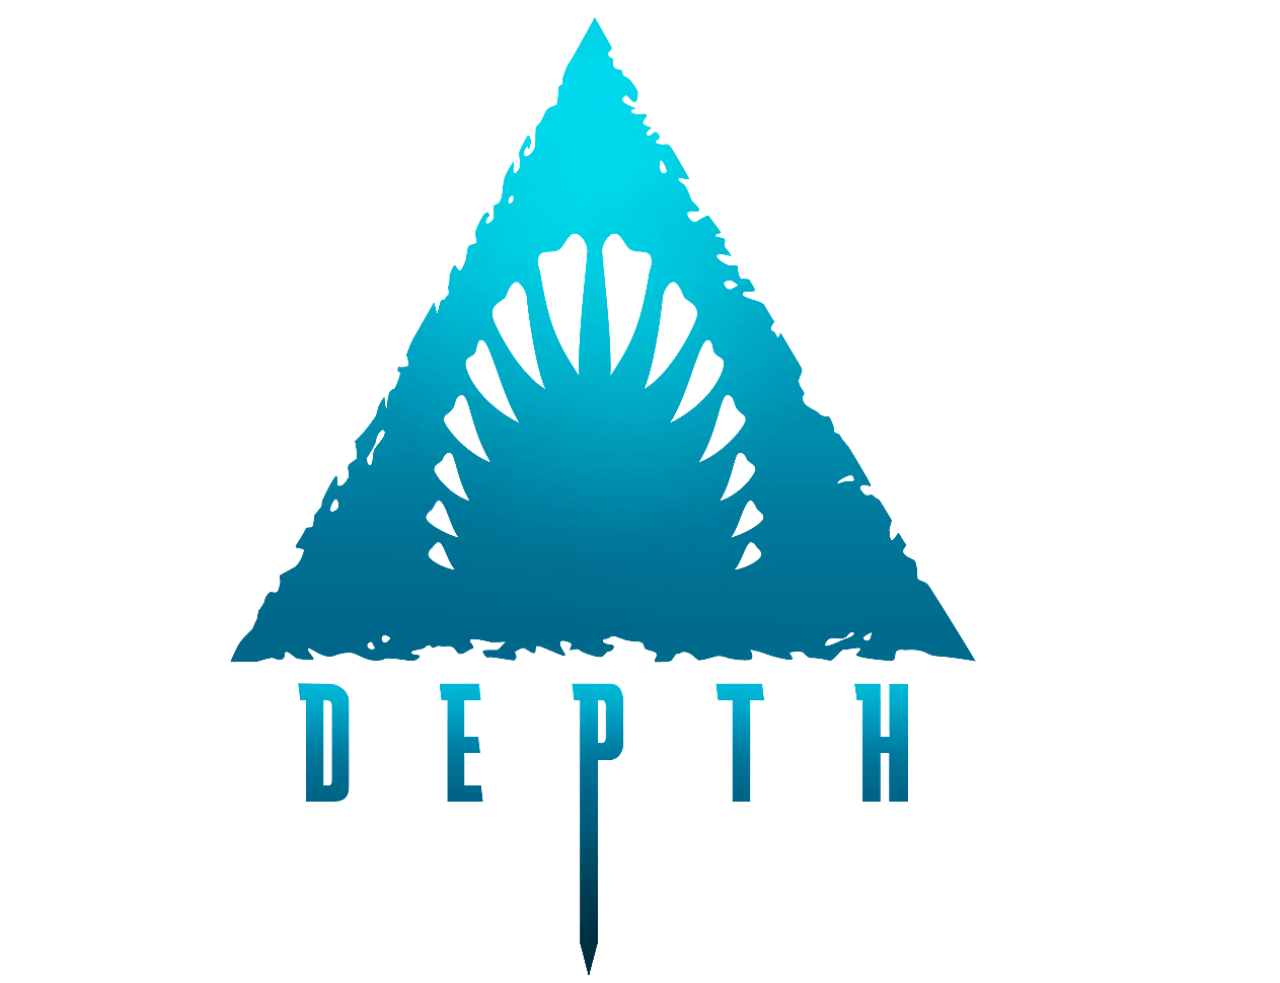 Depth Logo - Image - Depth Logo Clean Transparent medium.png | Depth Wiki ...